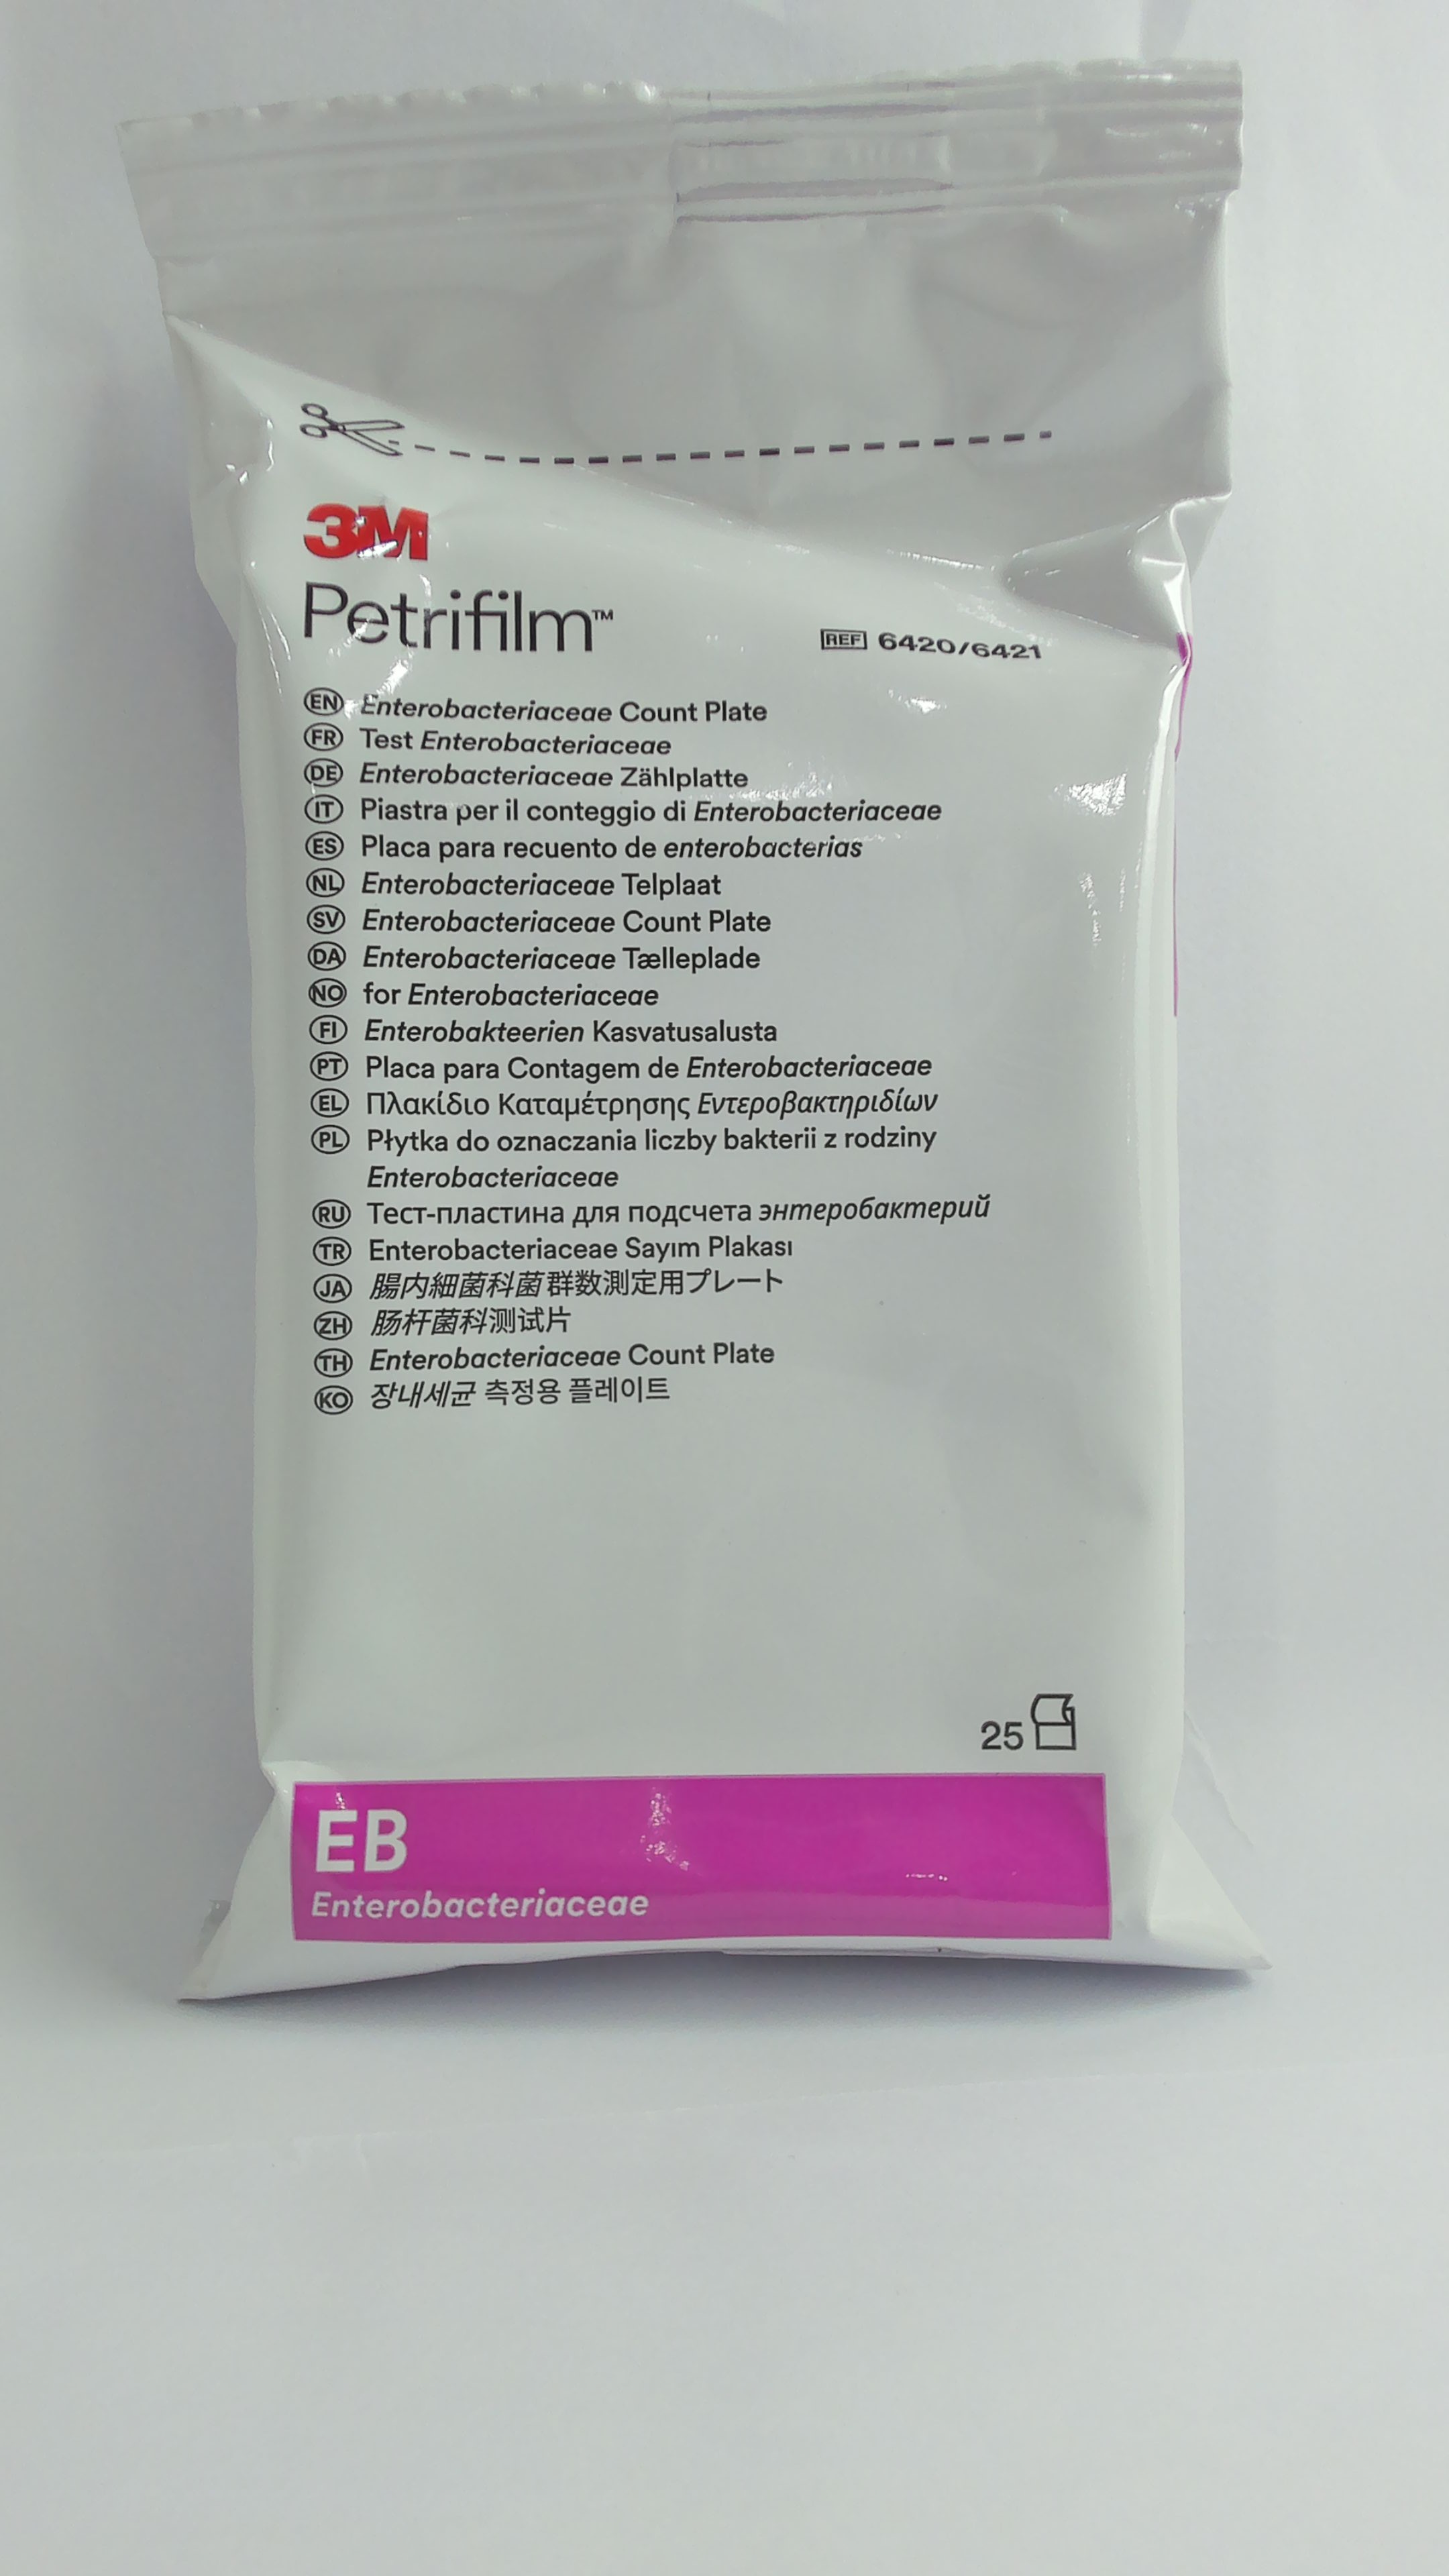 Petrifilm recuento Enterobacteria (1155X98)